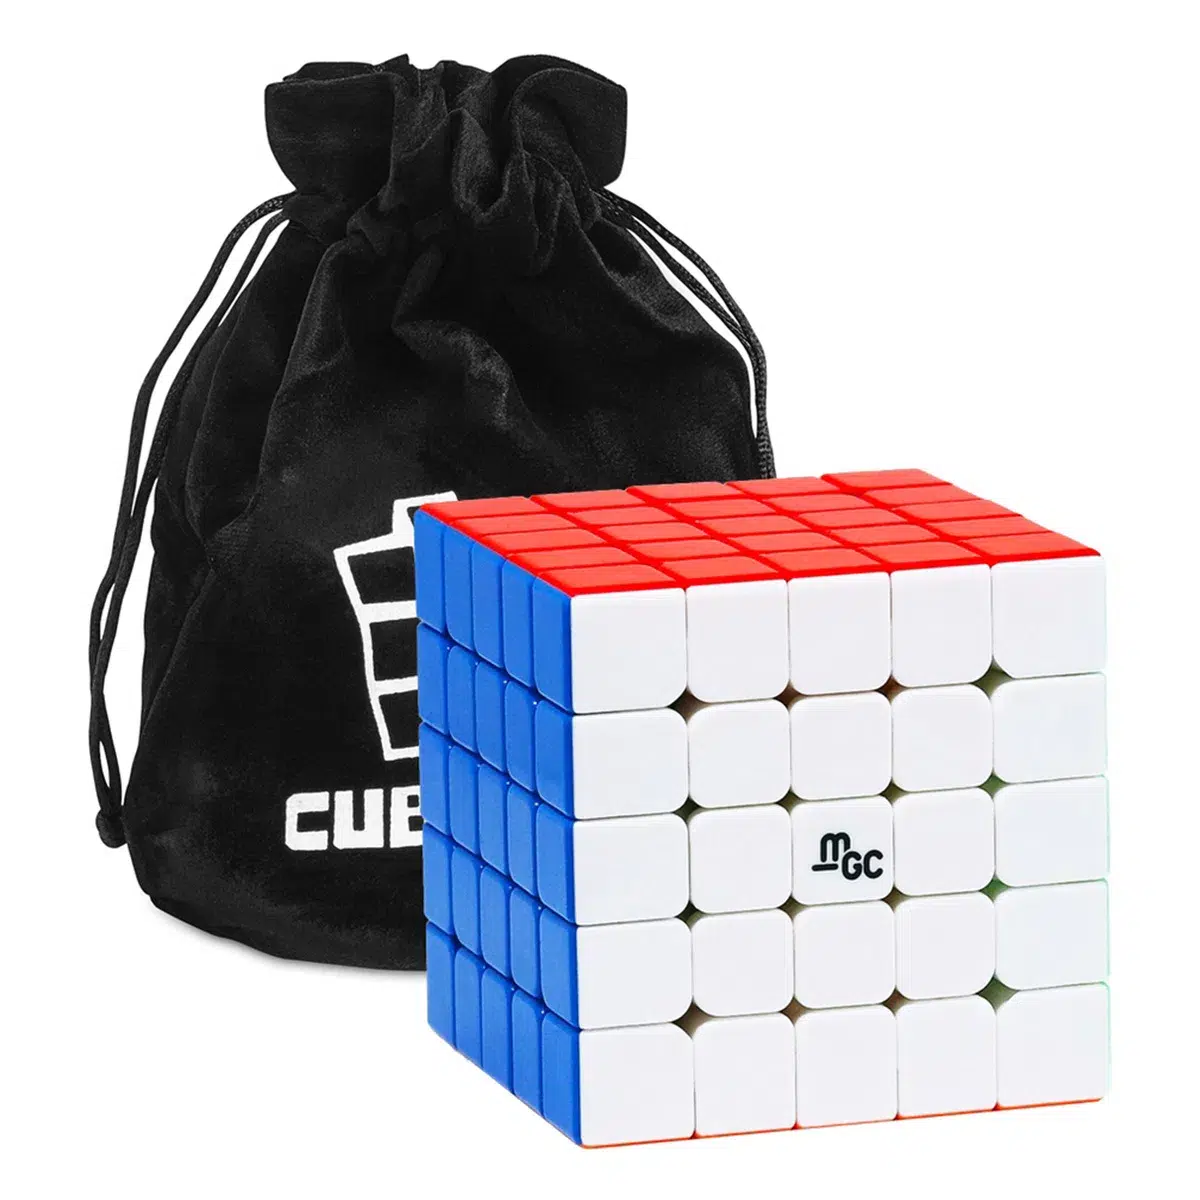 5x5 Speed Cube YJ MGC 5x5 M - Stickerlos Image 2